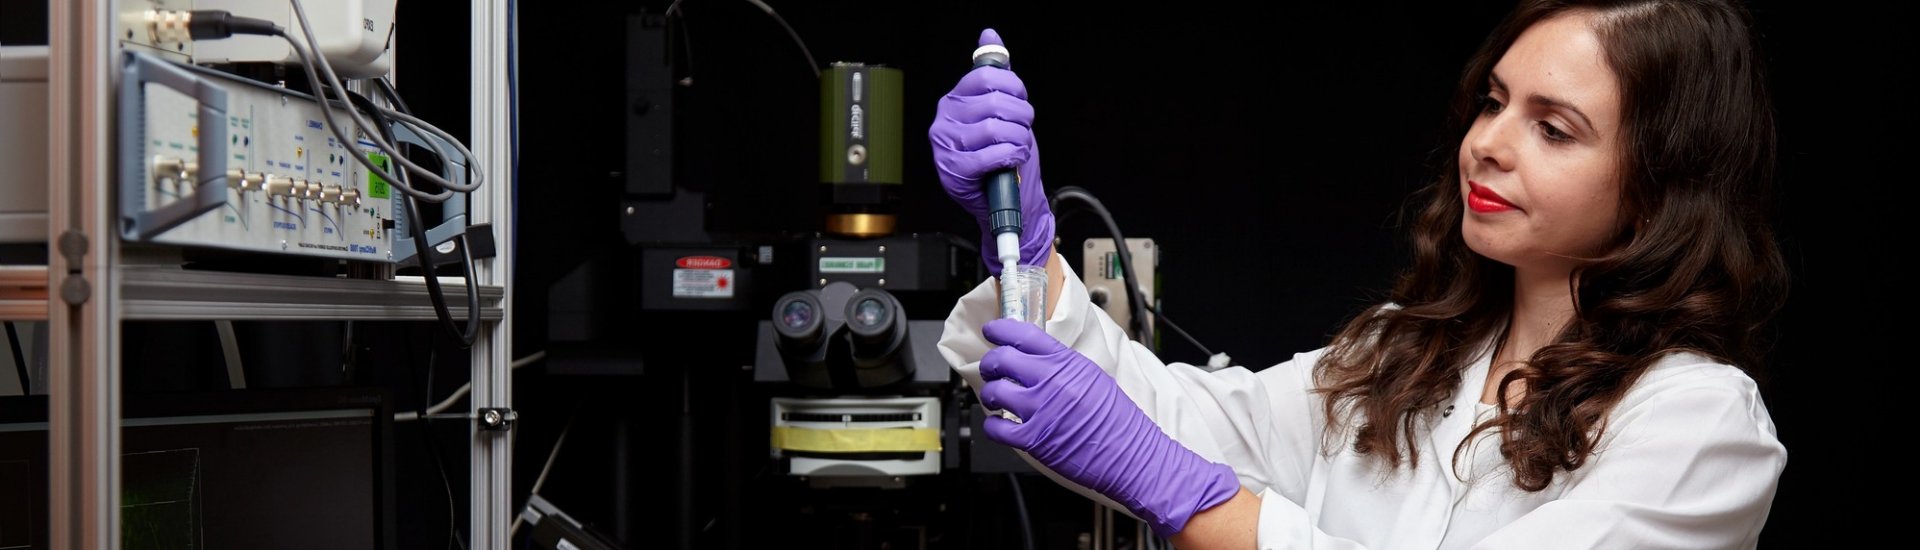 Vrouwelijke wetenschapper aan het werk in een laboratorium. (Foto: forwomeninscience.com)